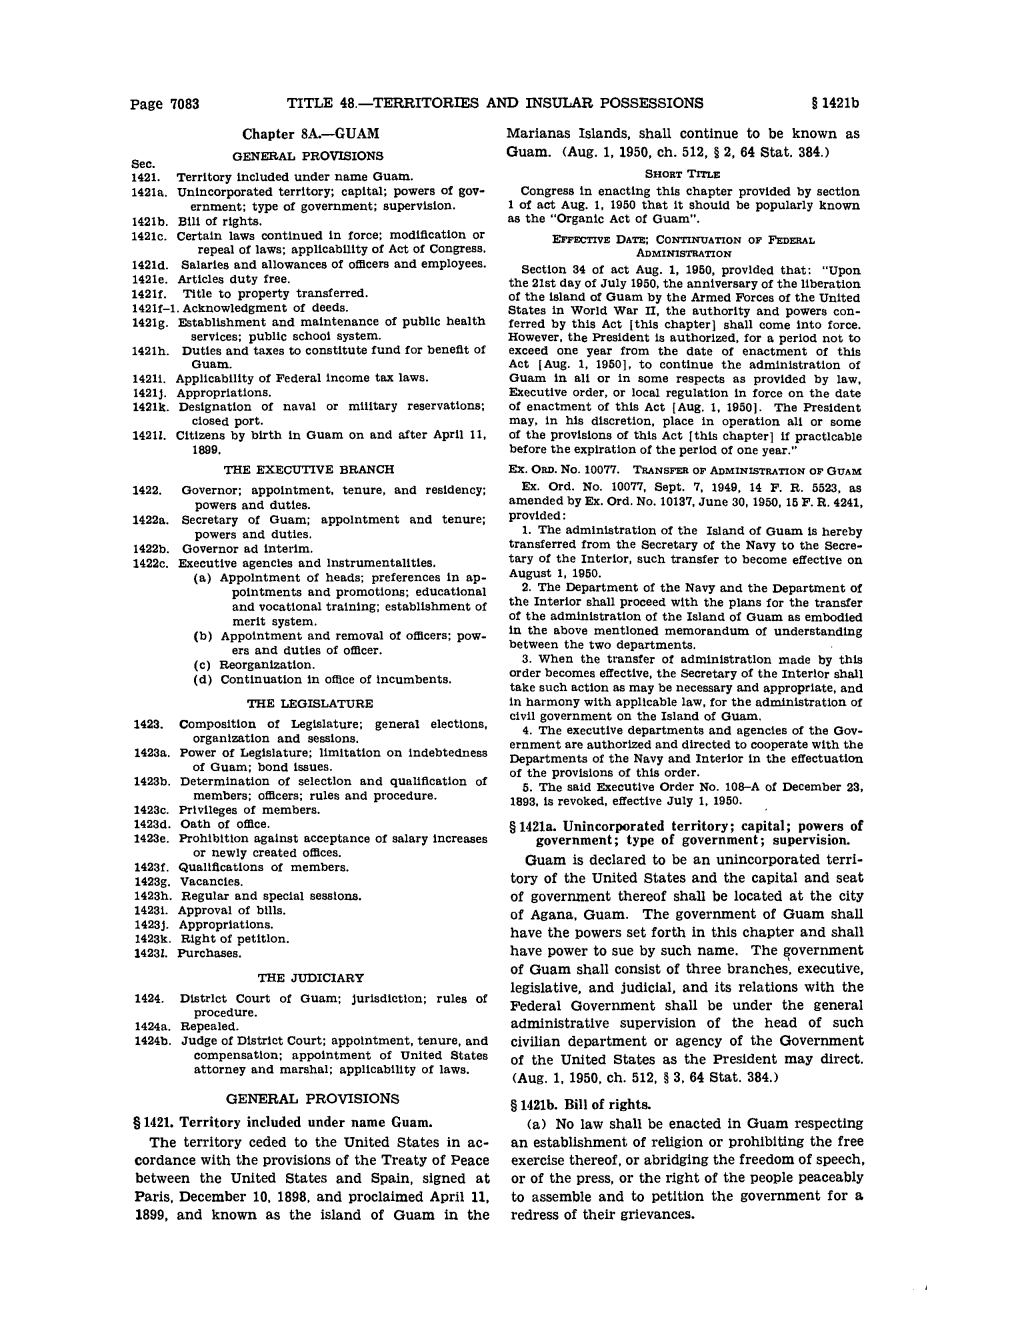 United States Code: Guam, 48 U.S.C. §§ 1421-1424B (1952)